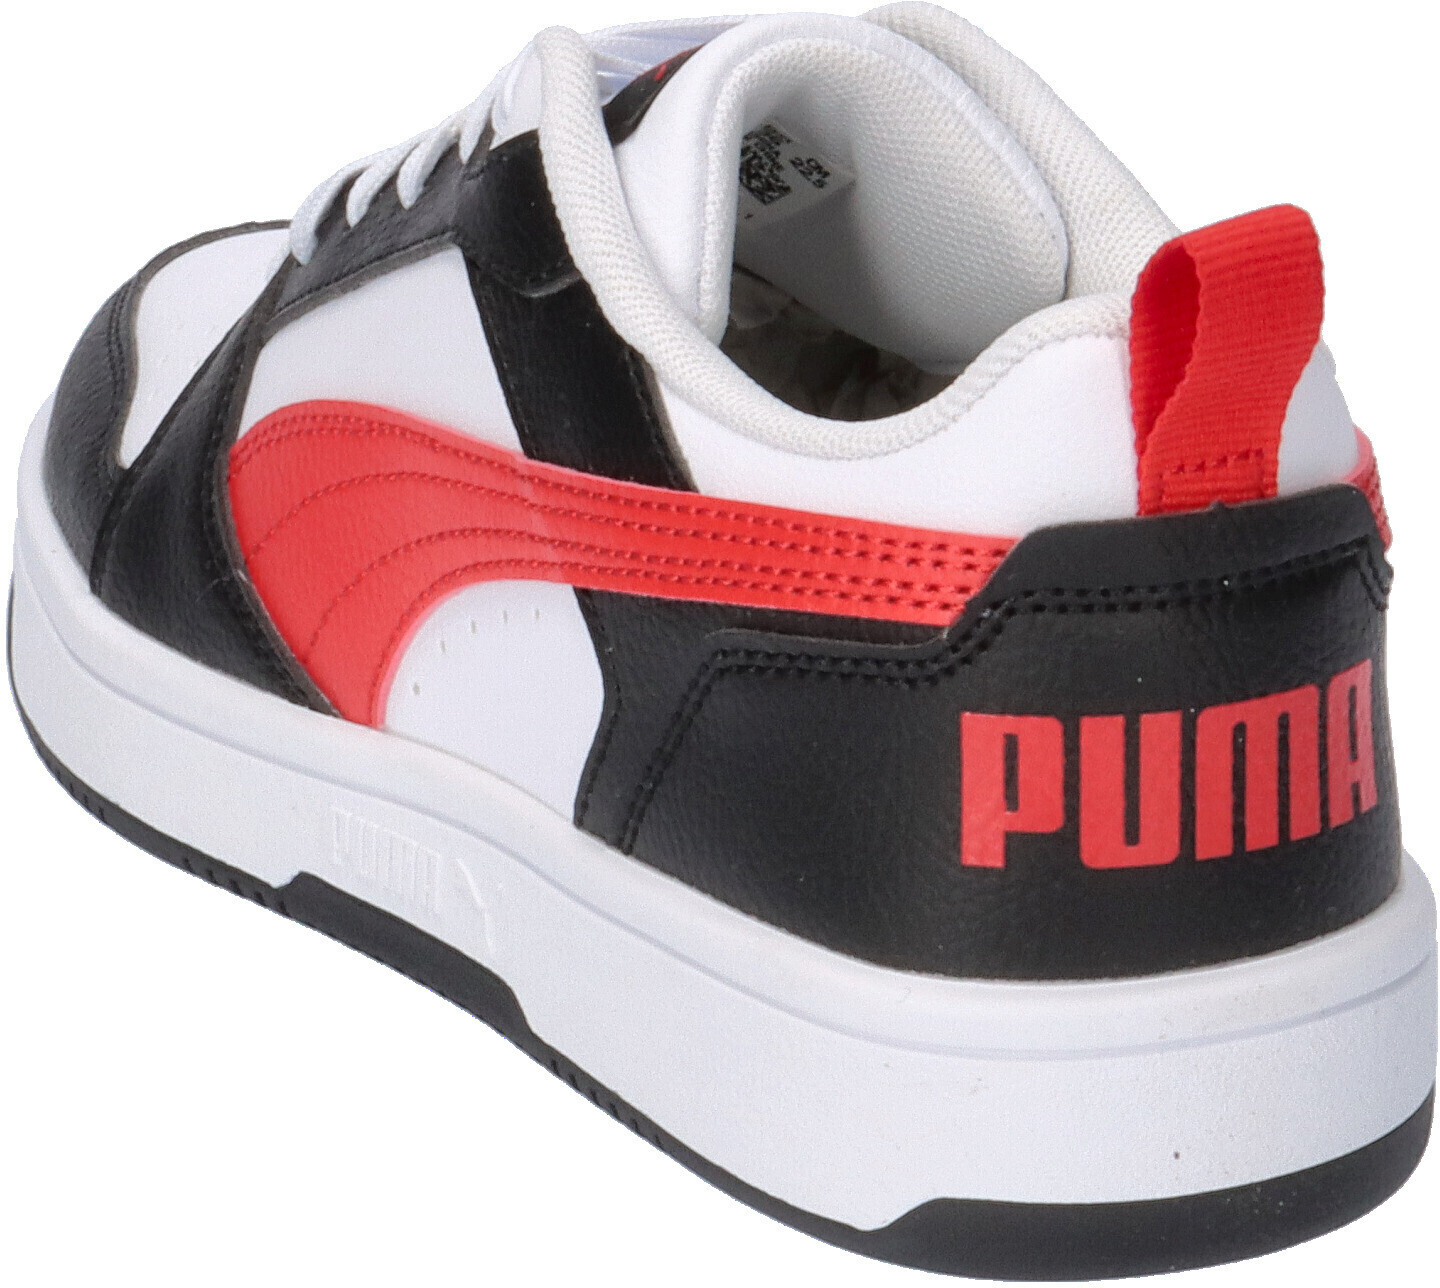 Puma Rebound V6 Lo (393833) puma white/for all time red/puma black ab 28,99  € | Preisvergleich bei